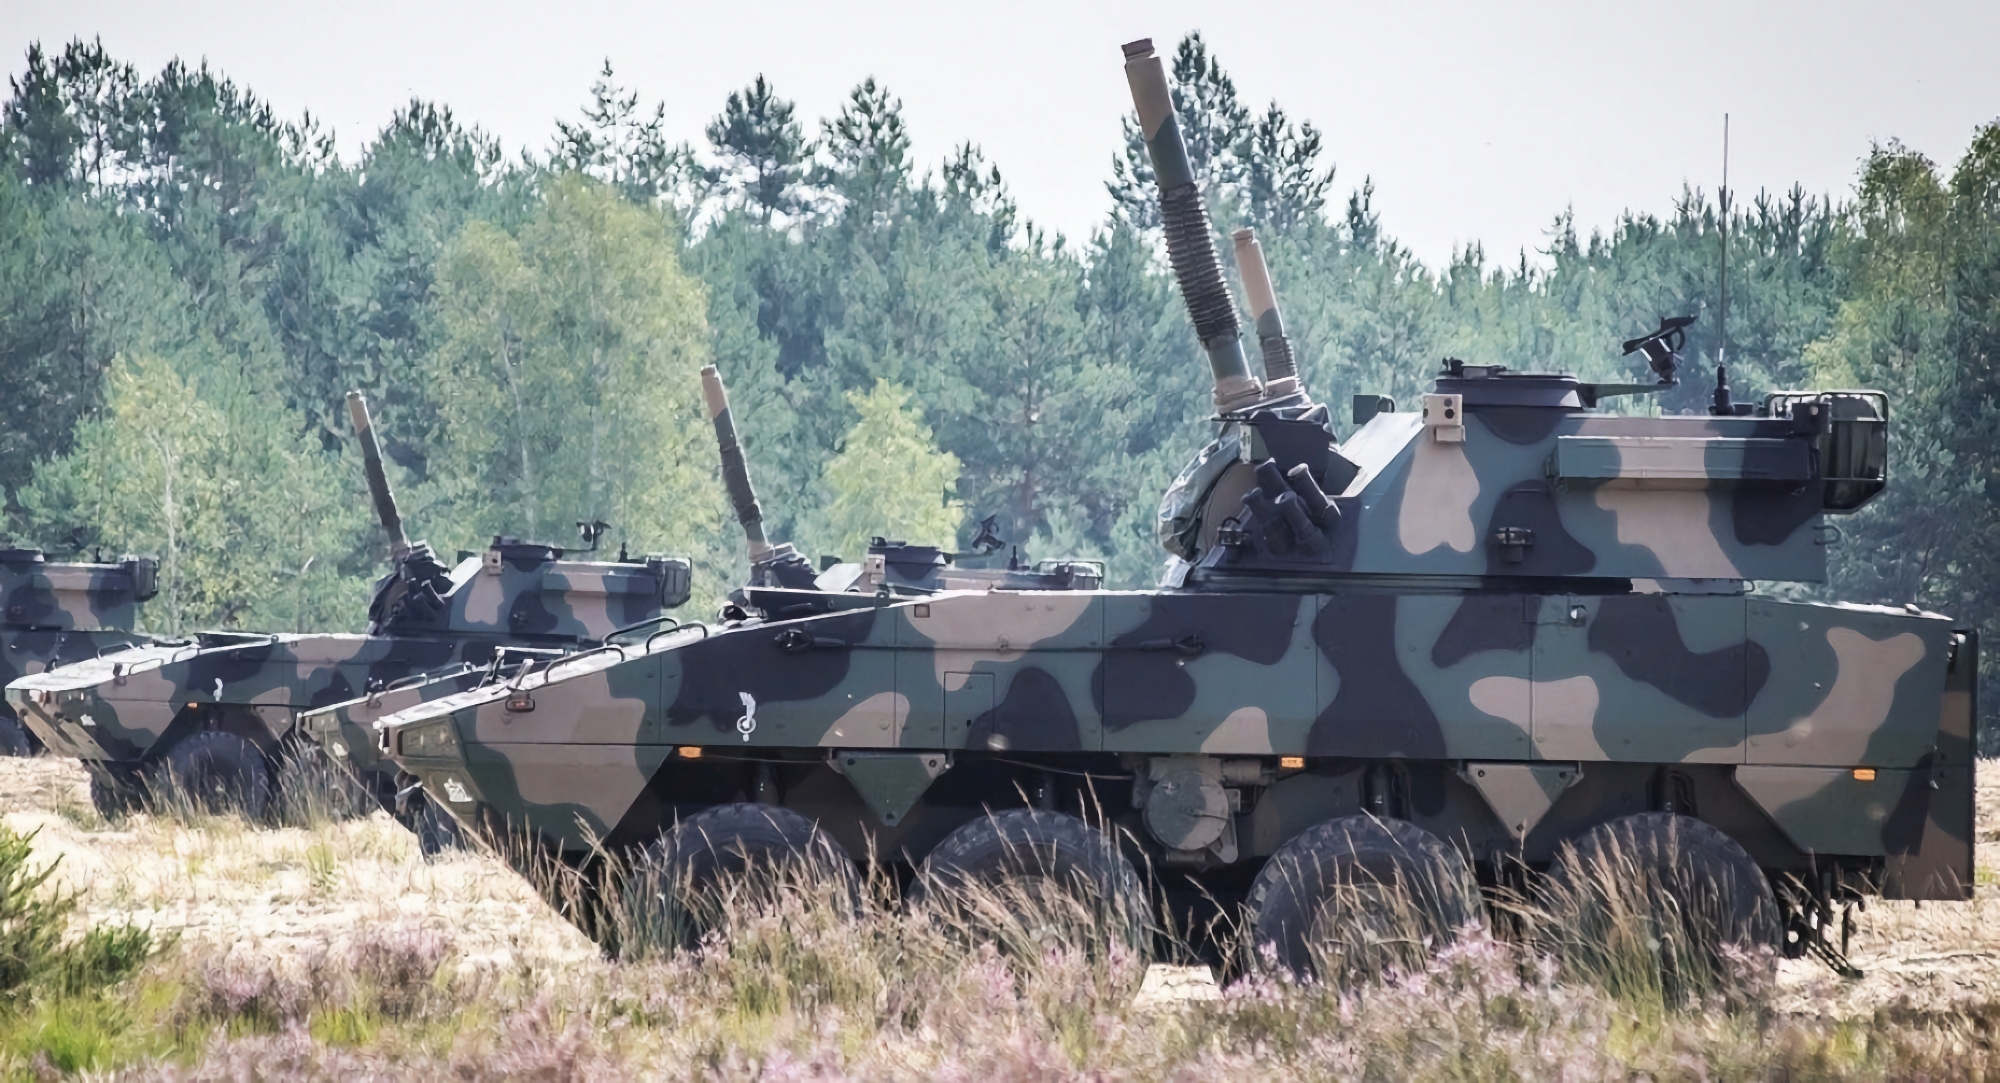 Den polska armén har mottagit en ny omgång 120 mm Rak självgående granatkastare med en räckvidd på upp till 12 km